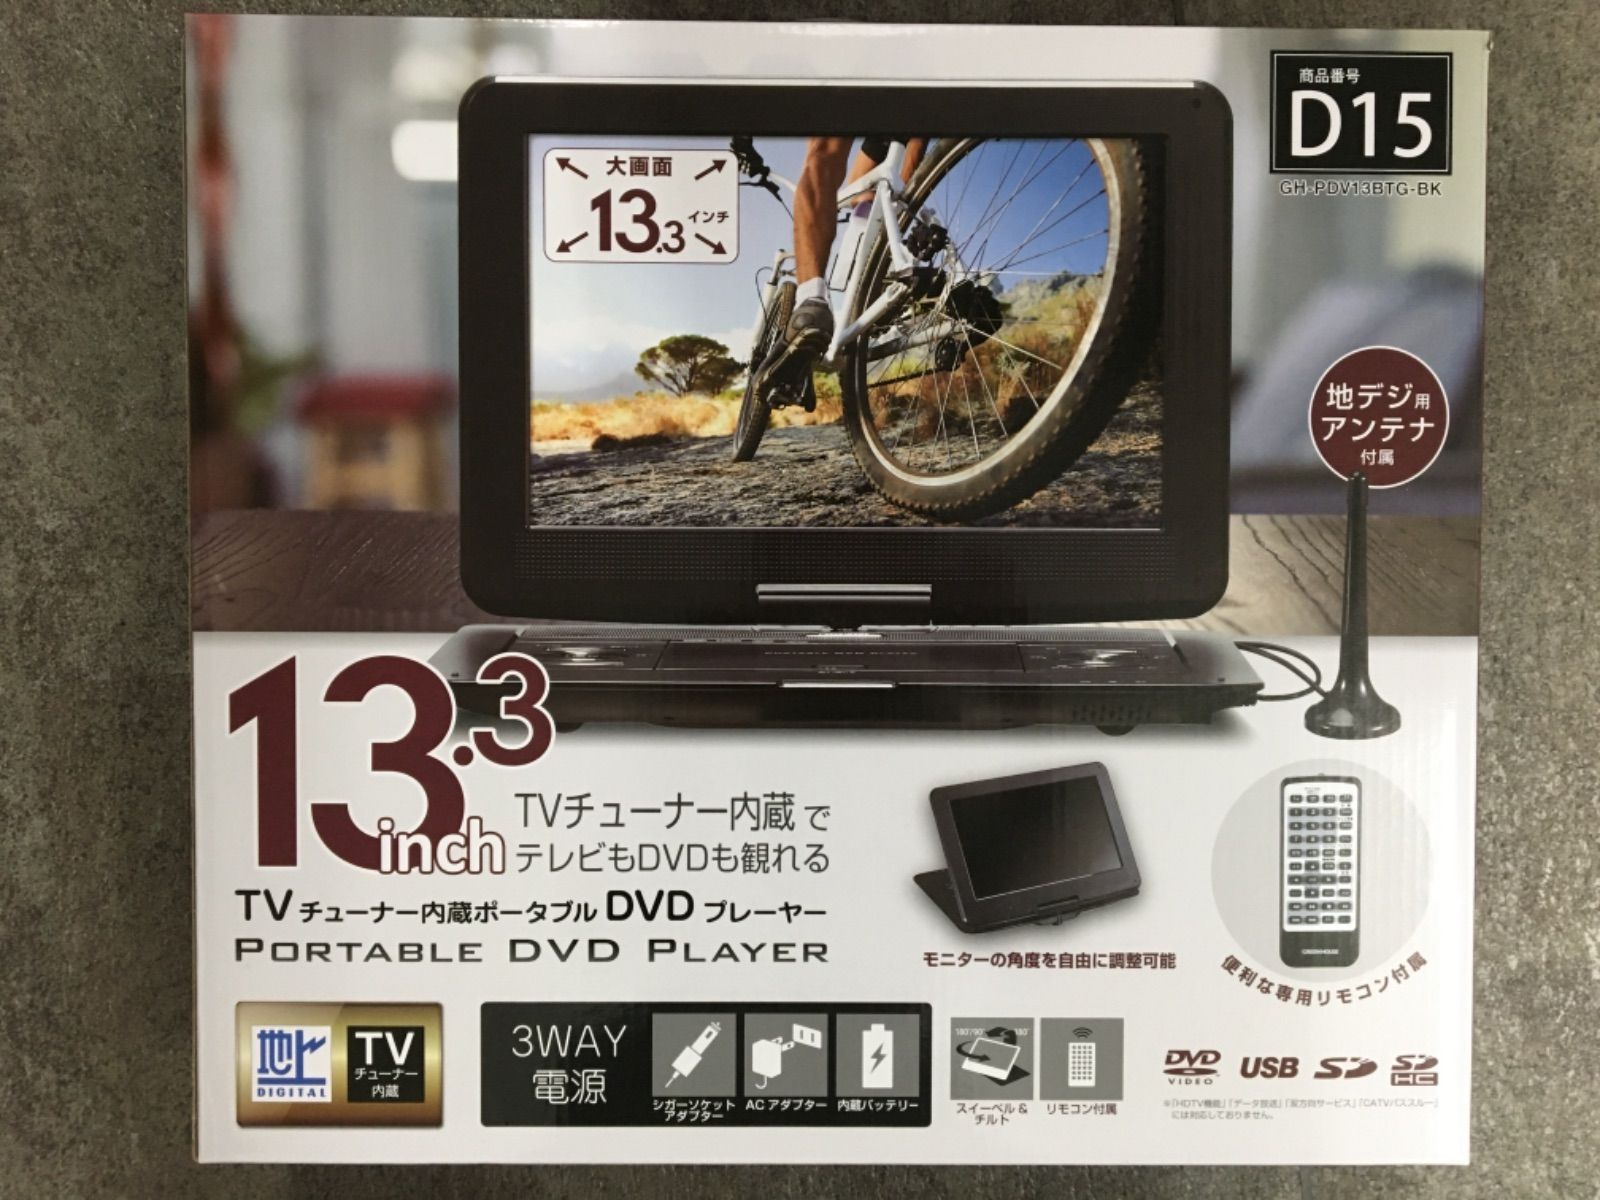 グリーンハウス DVDプレイヤー GH-PDV13BTG-BK - メルカリ